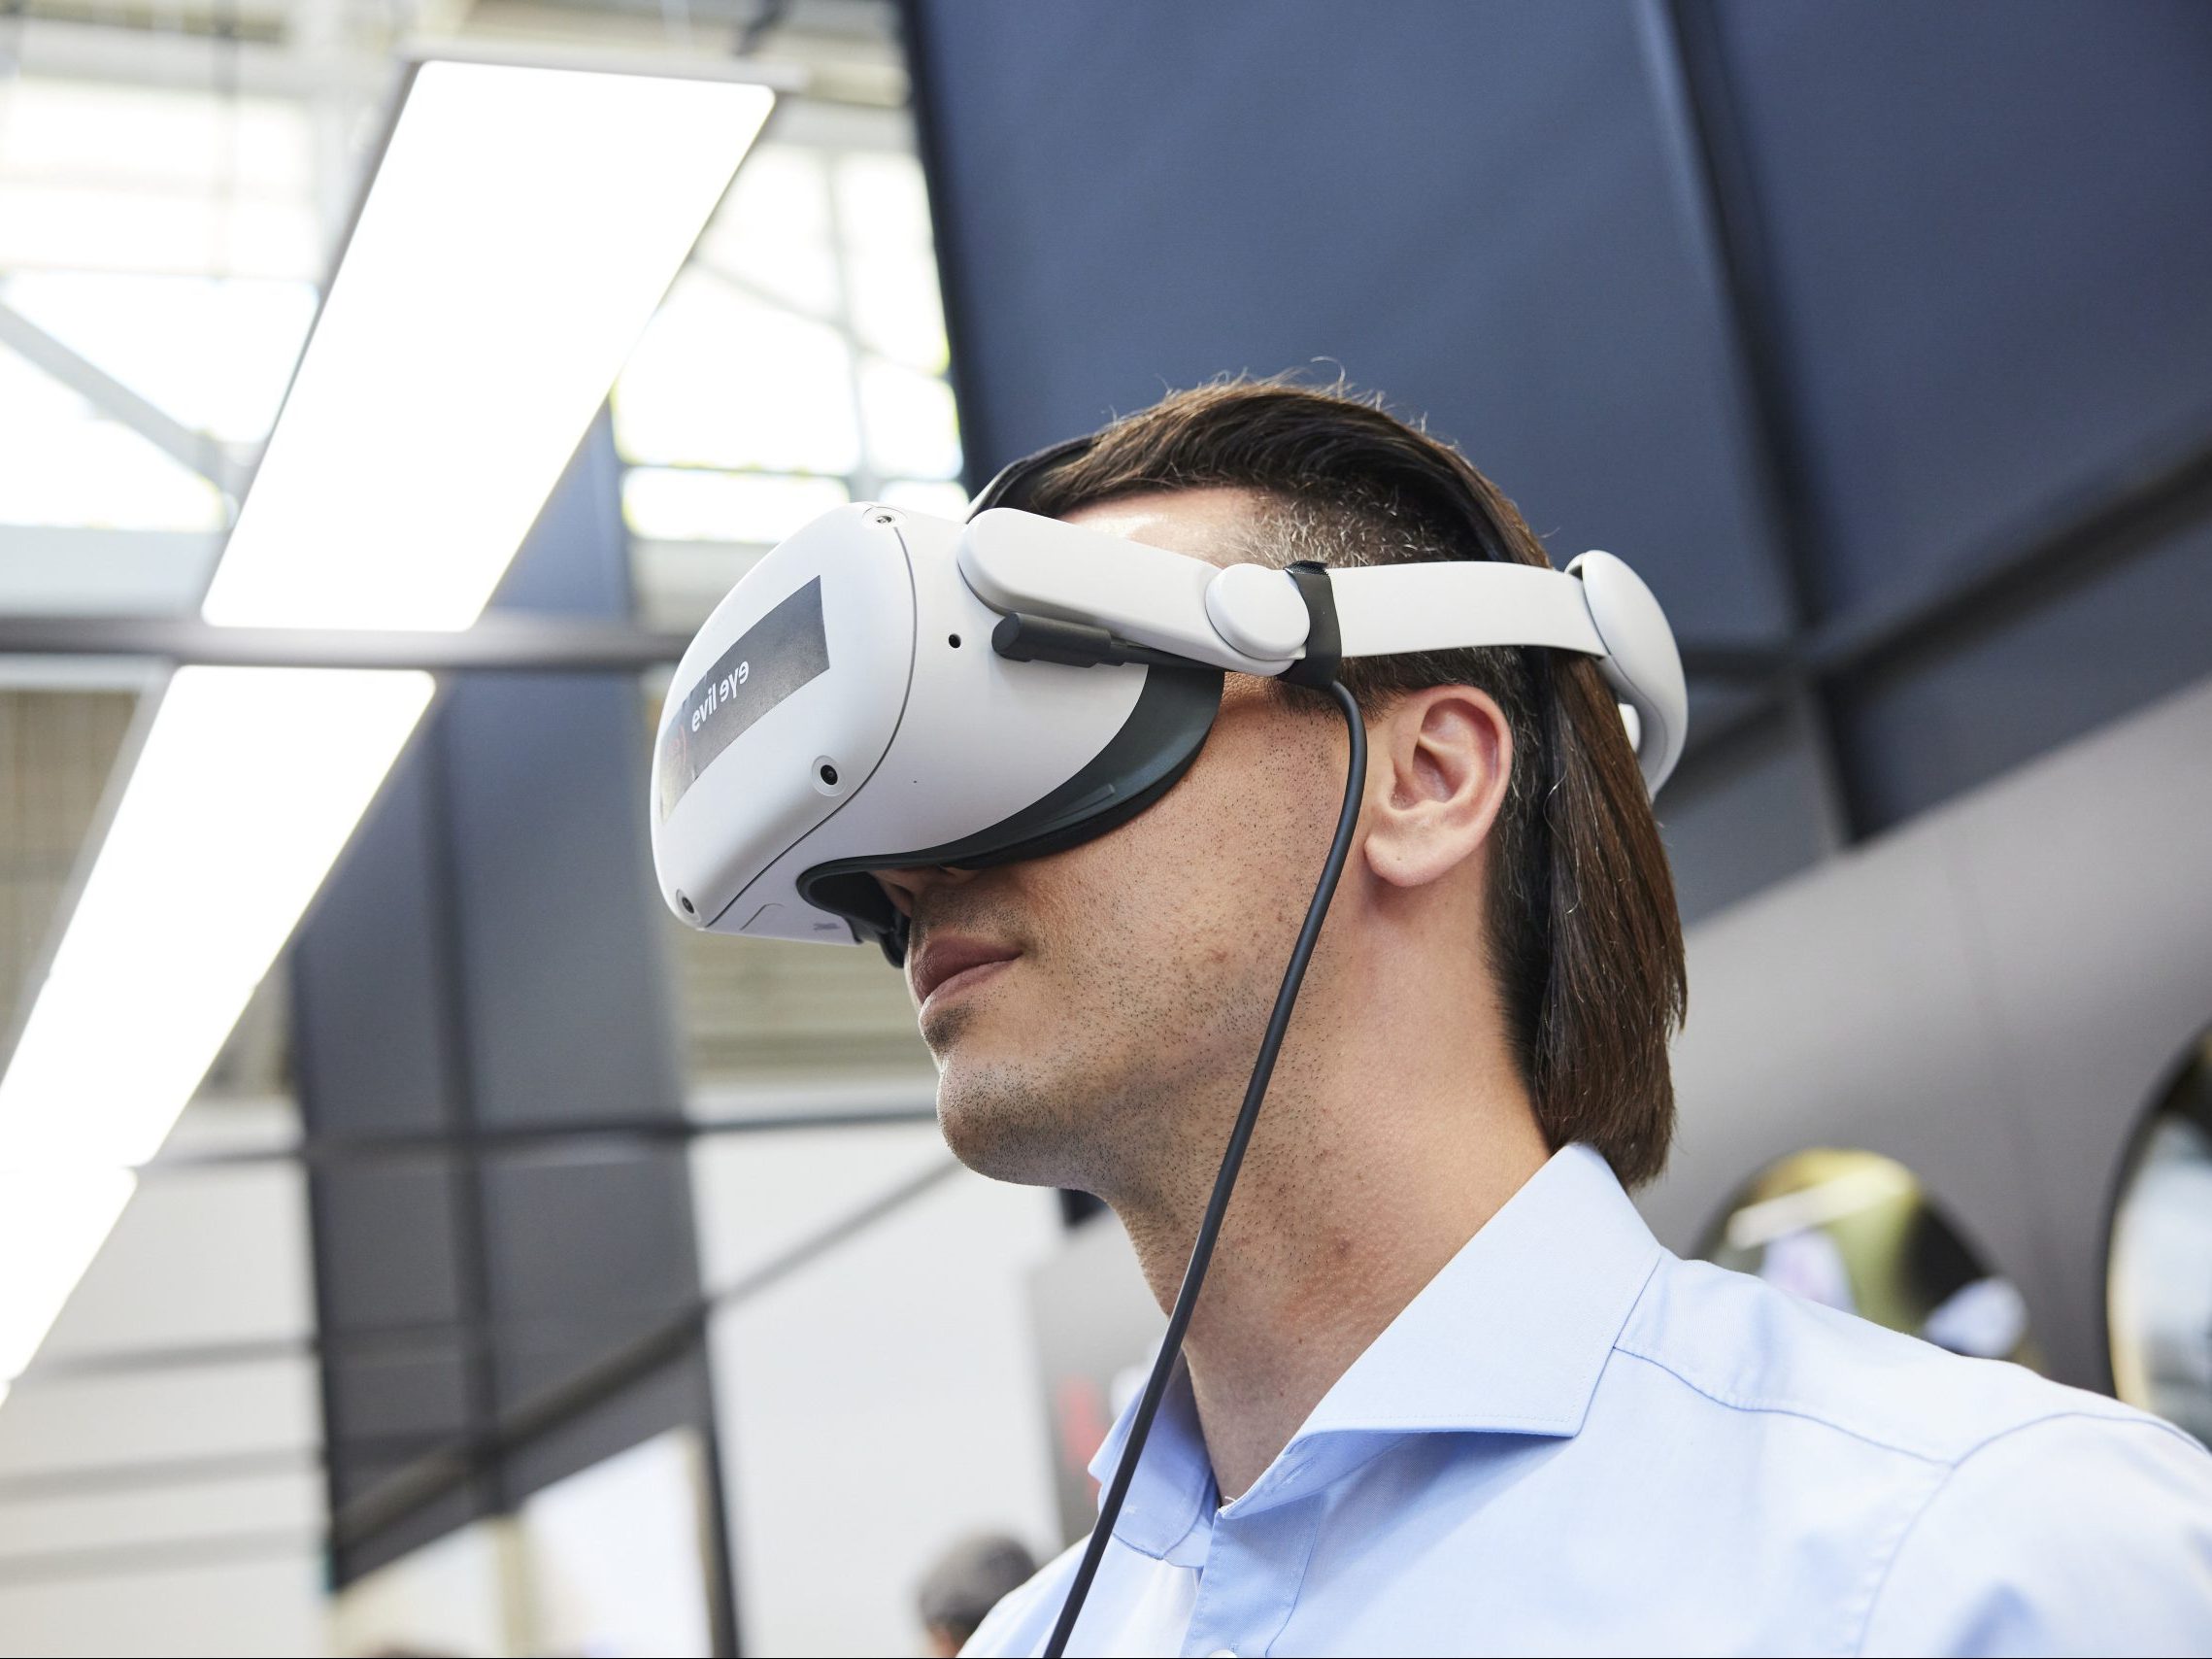 Die Opti präsentiert die Trends von Morgen. Die VR-Brille als Teil des Trends.